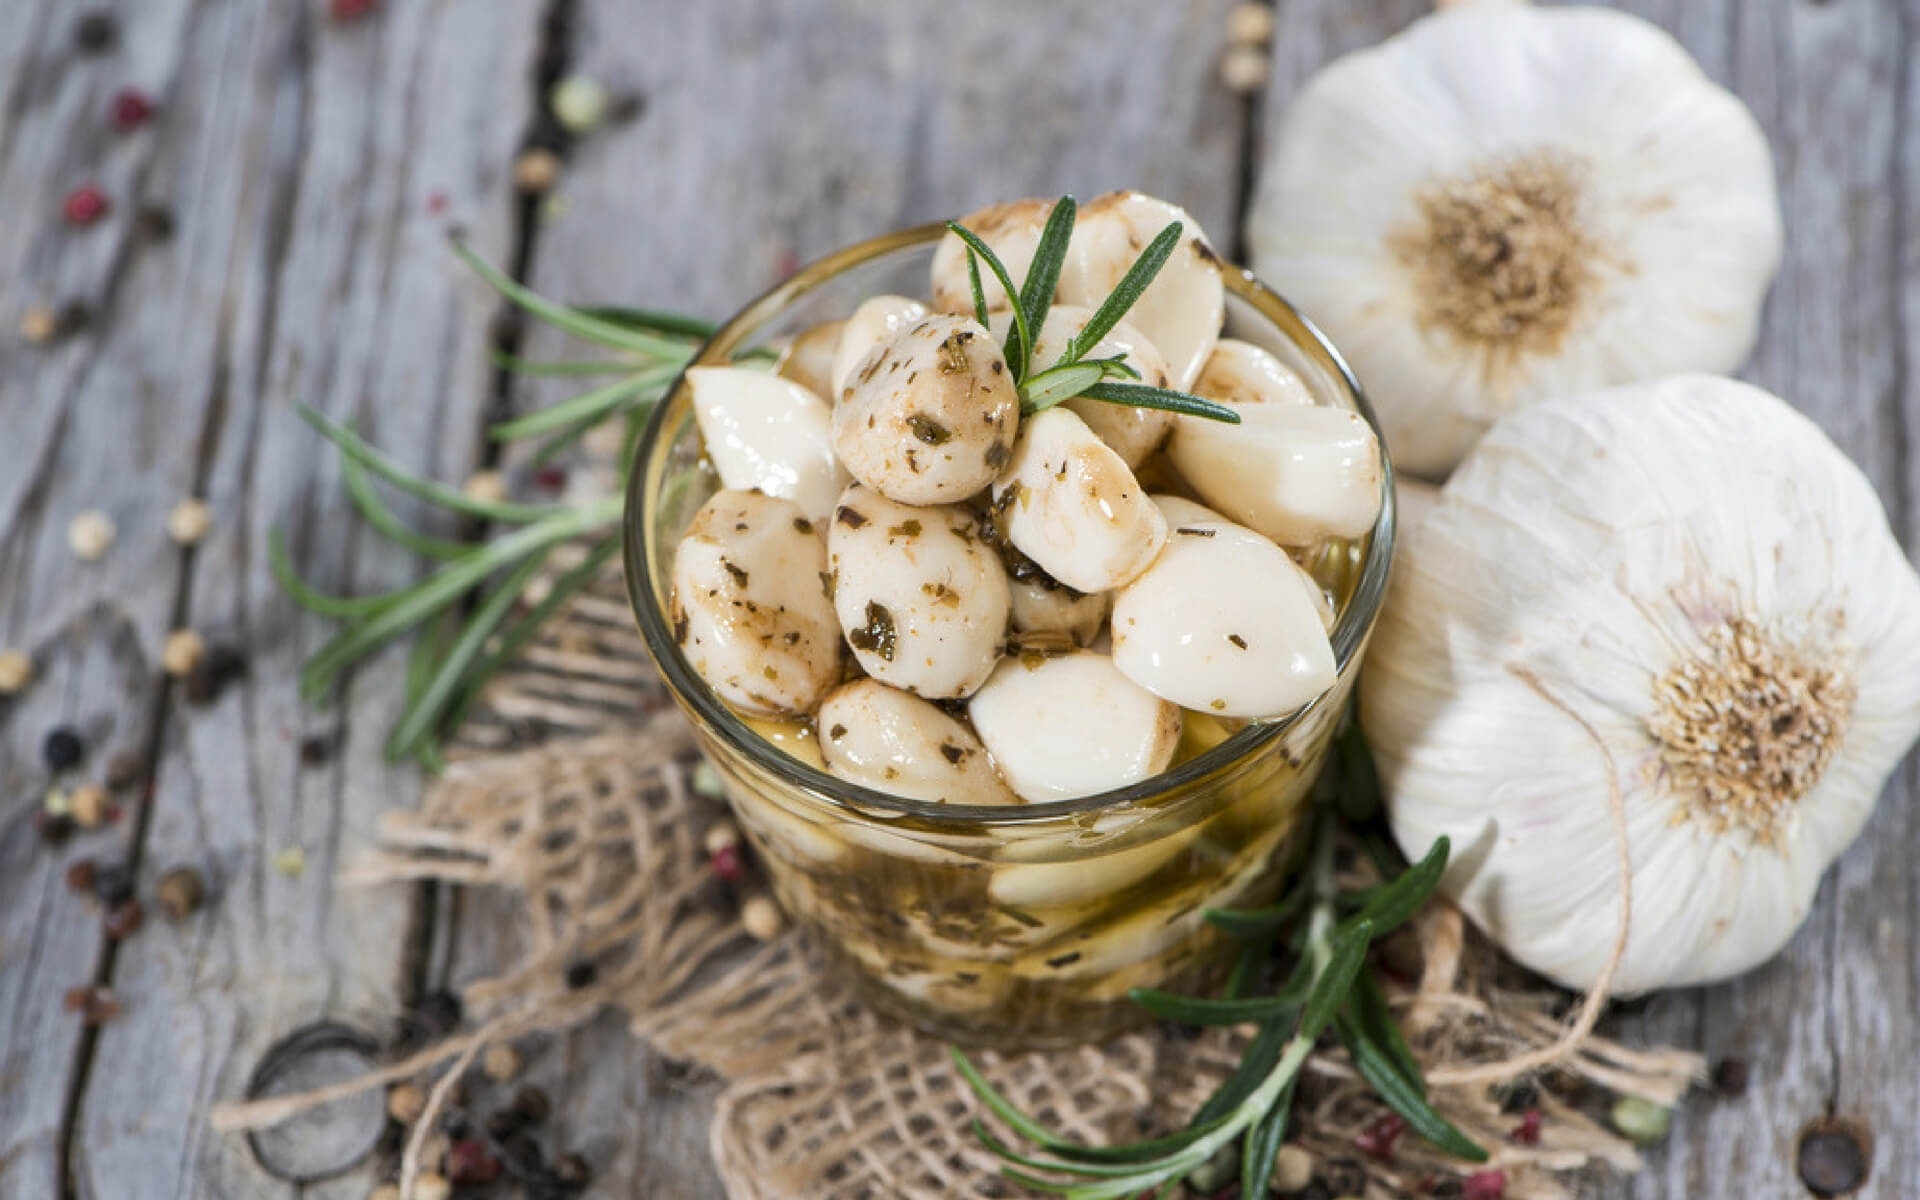 L'aglio è un ottimo antiparassitario naturale e molto utile per eliminare le cimici da casa